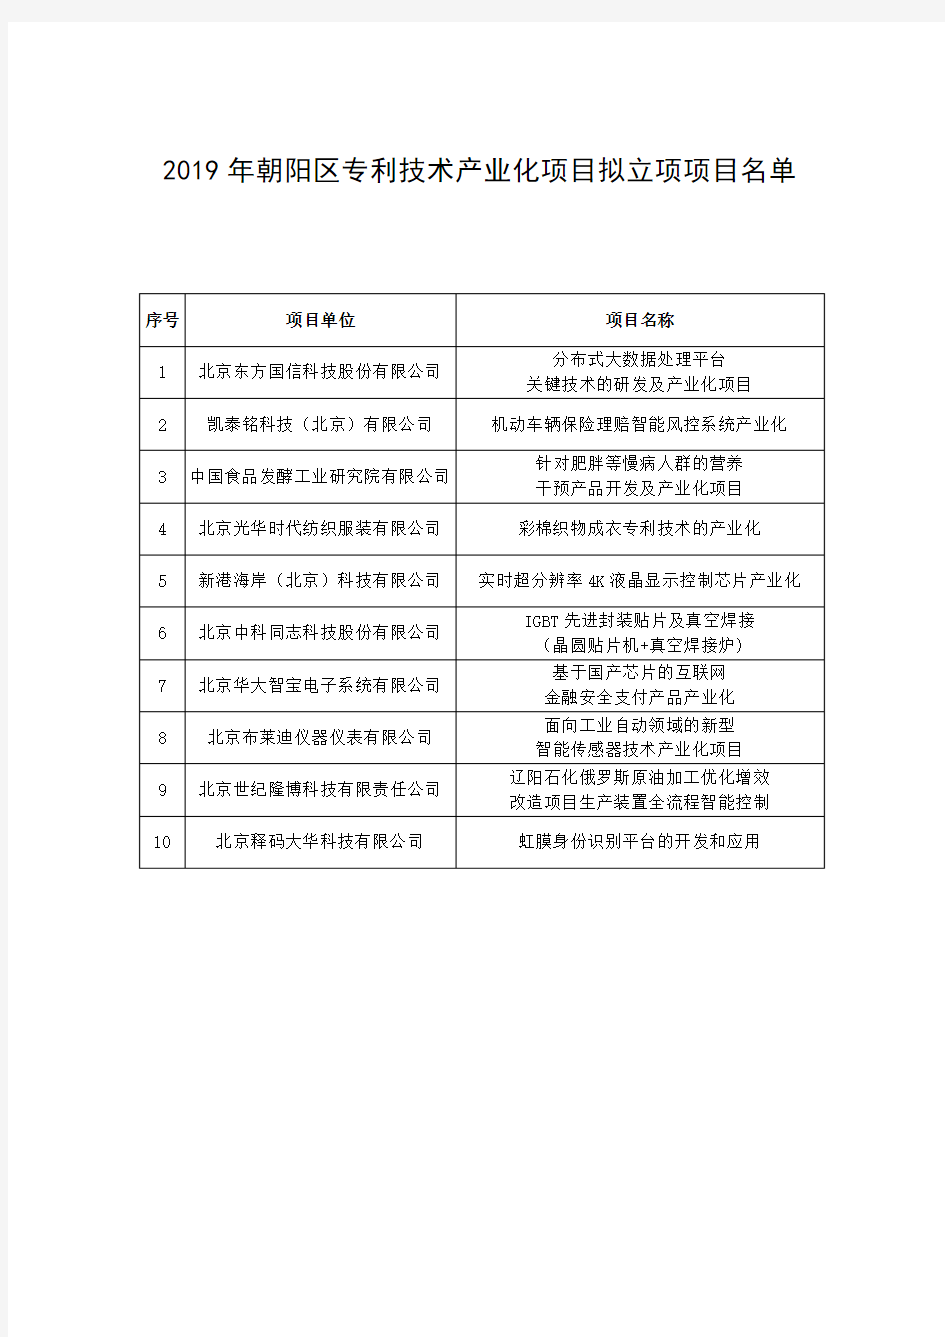 2019年朝阳区专利技术产业化项目拟立项项目名单